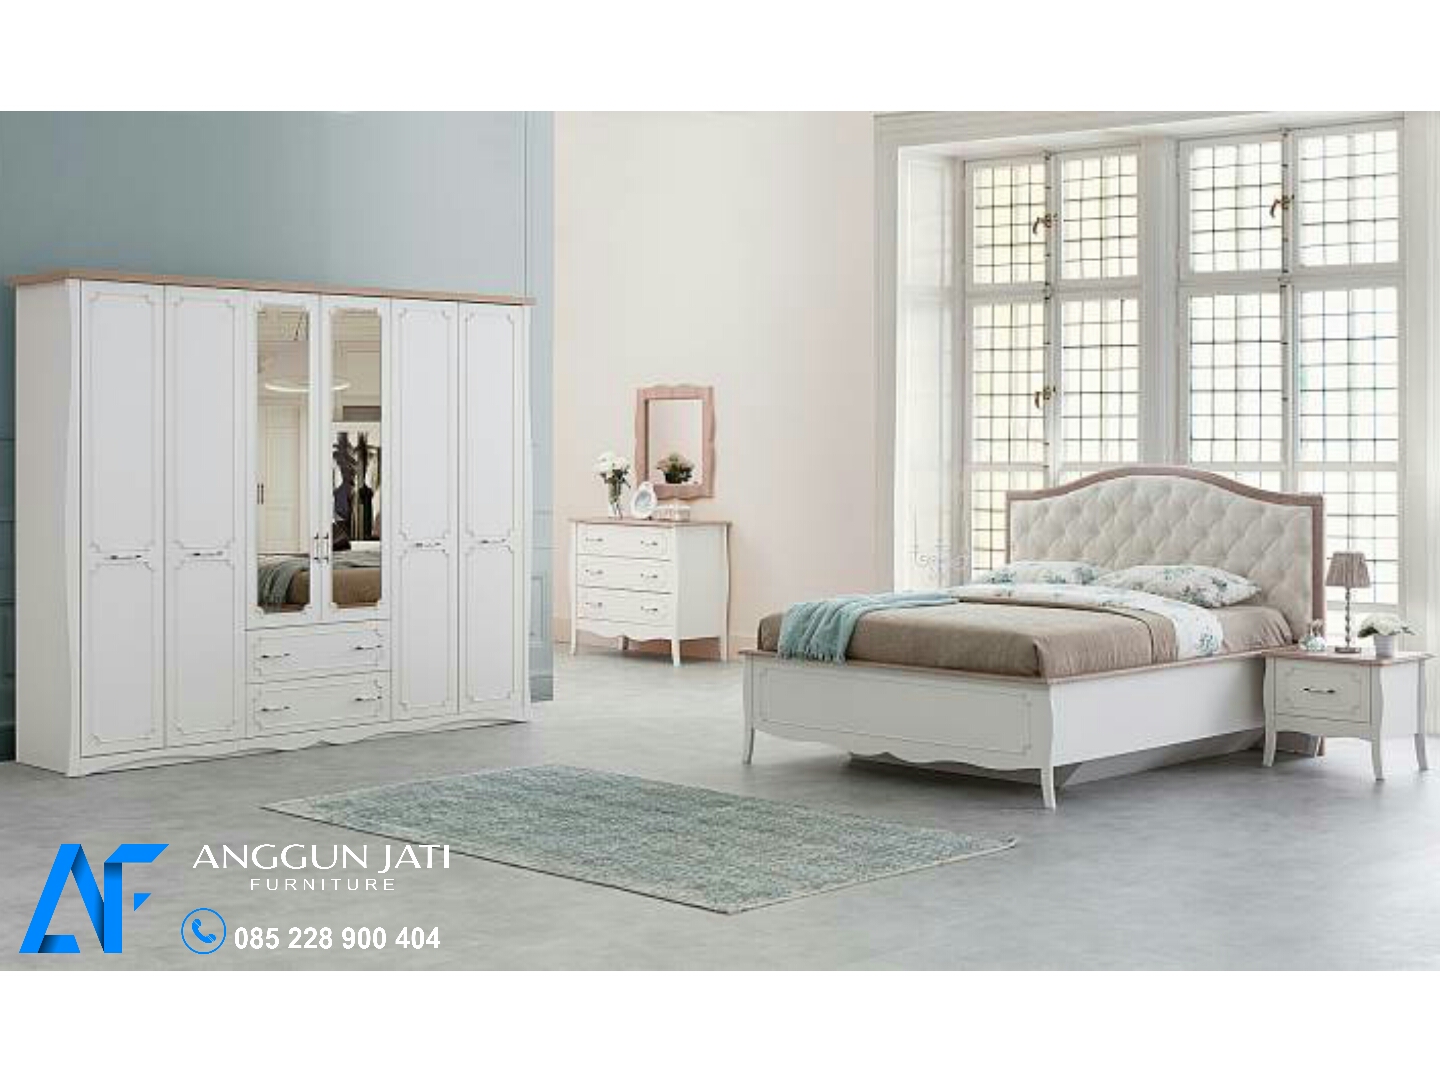 Kamar Set Minimalis Putih Modern Harga Set Kamar Warna Putih Mebel Jepara Jati Minimalis Anggun Jati Furniture